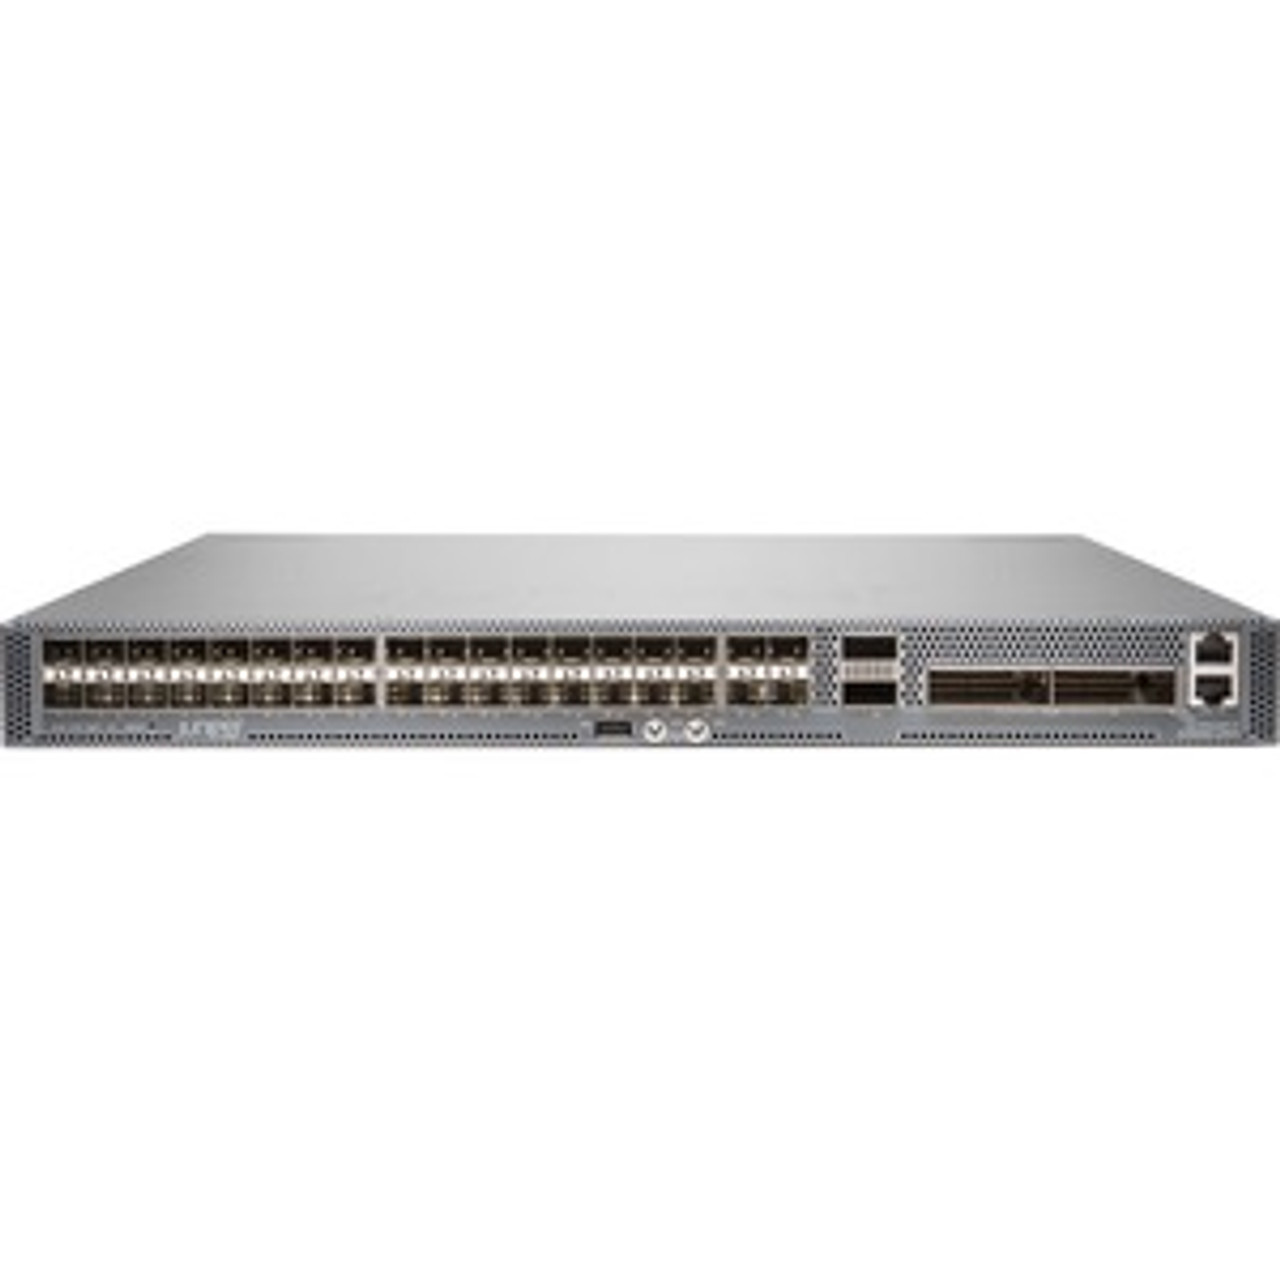 ACX5448-D-AC-AFI Juniper ACX5448-D 40 Slots - 200 Gigabit Ethernet Router (Refurbished)